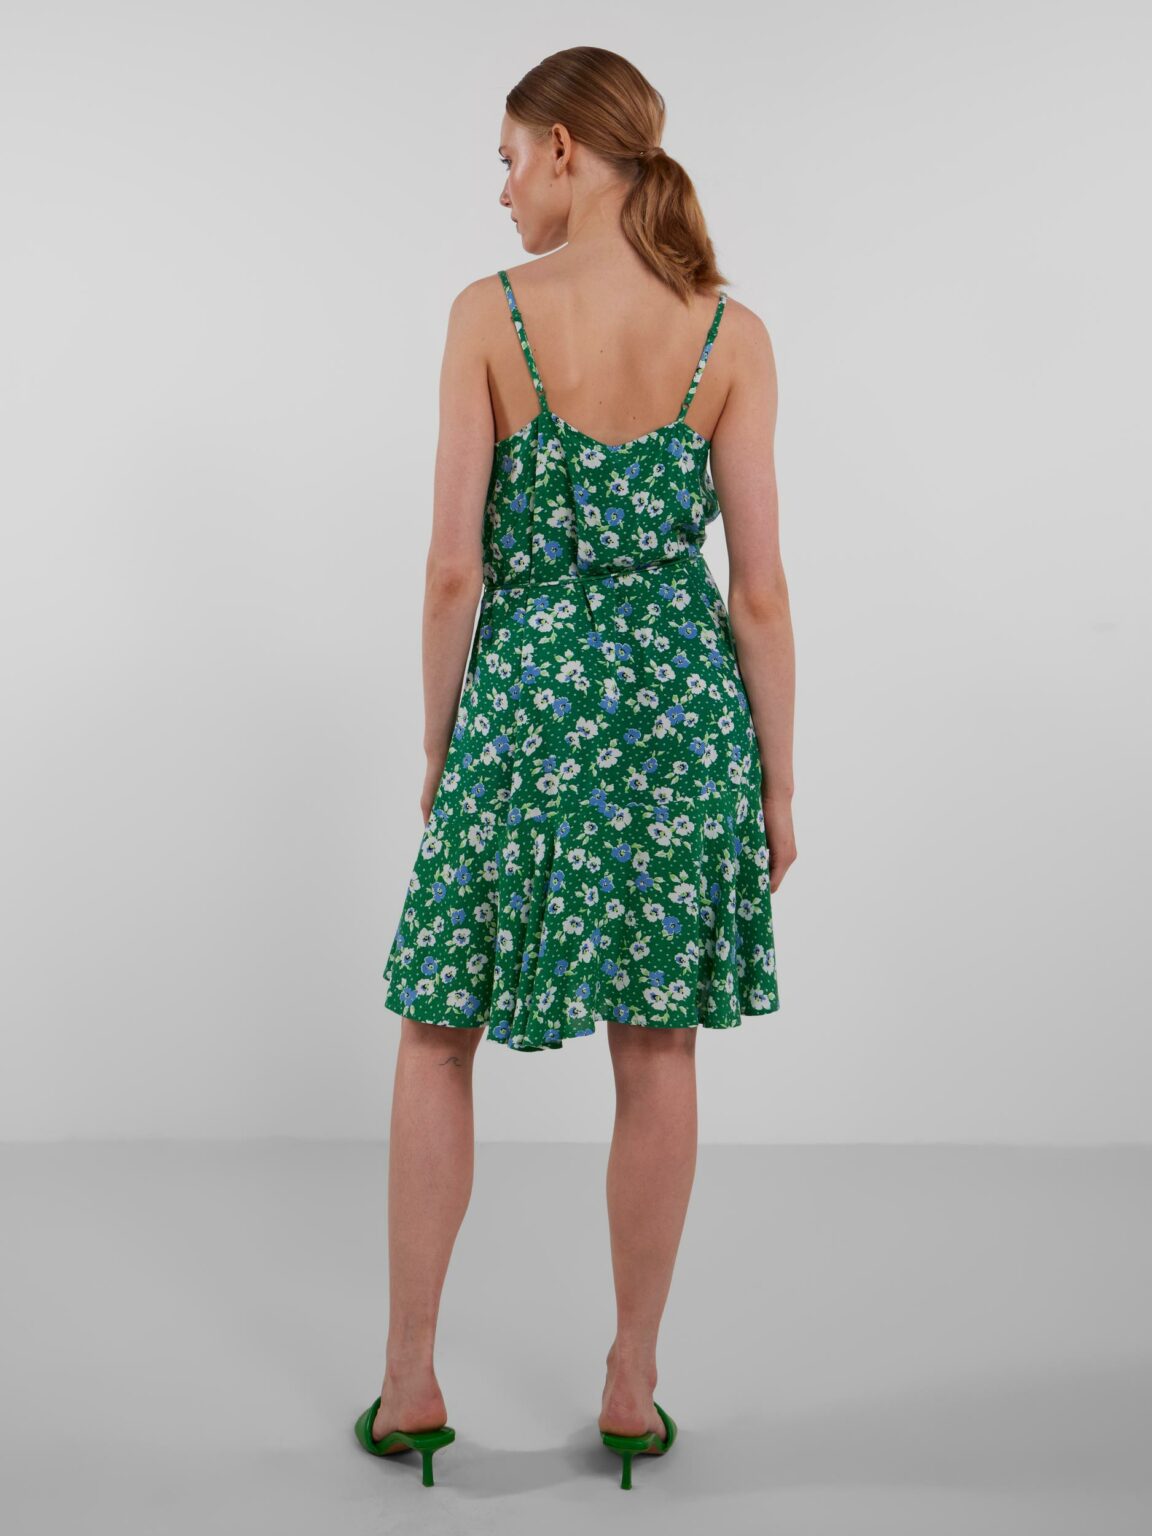 Modelo de espaldas con un vestido floral verde de tirantes.